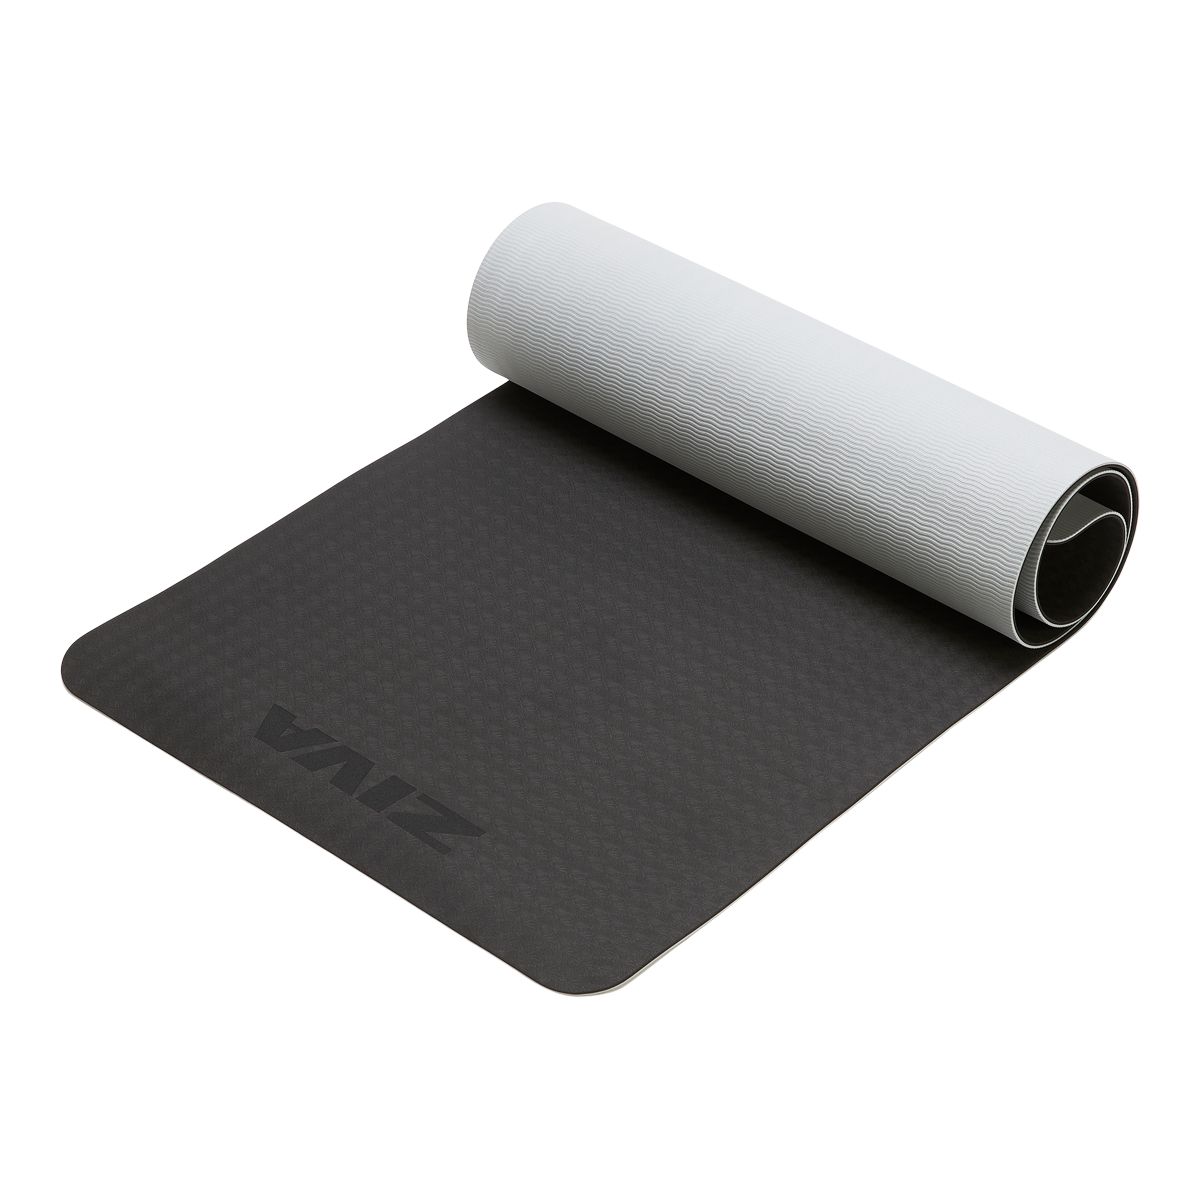 Evoke Printed Leaves Yoga Mat 5mm TPE